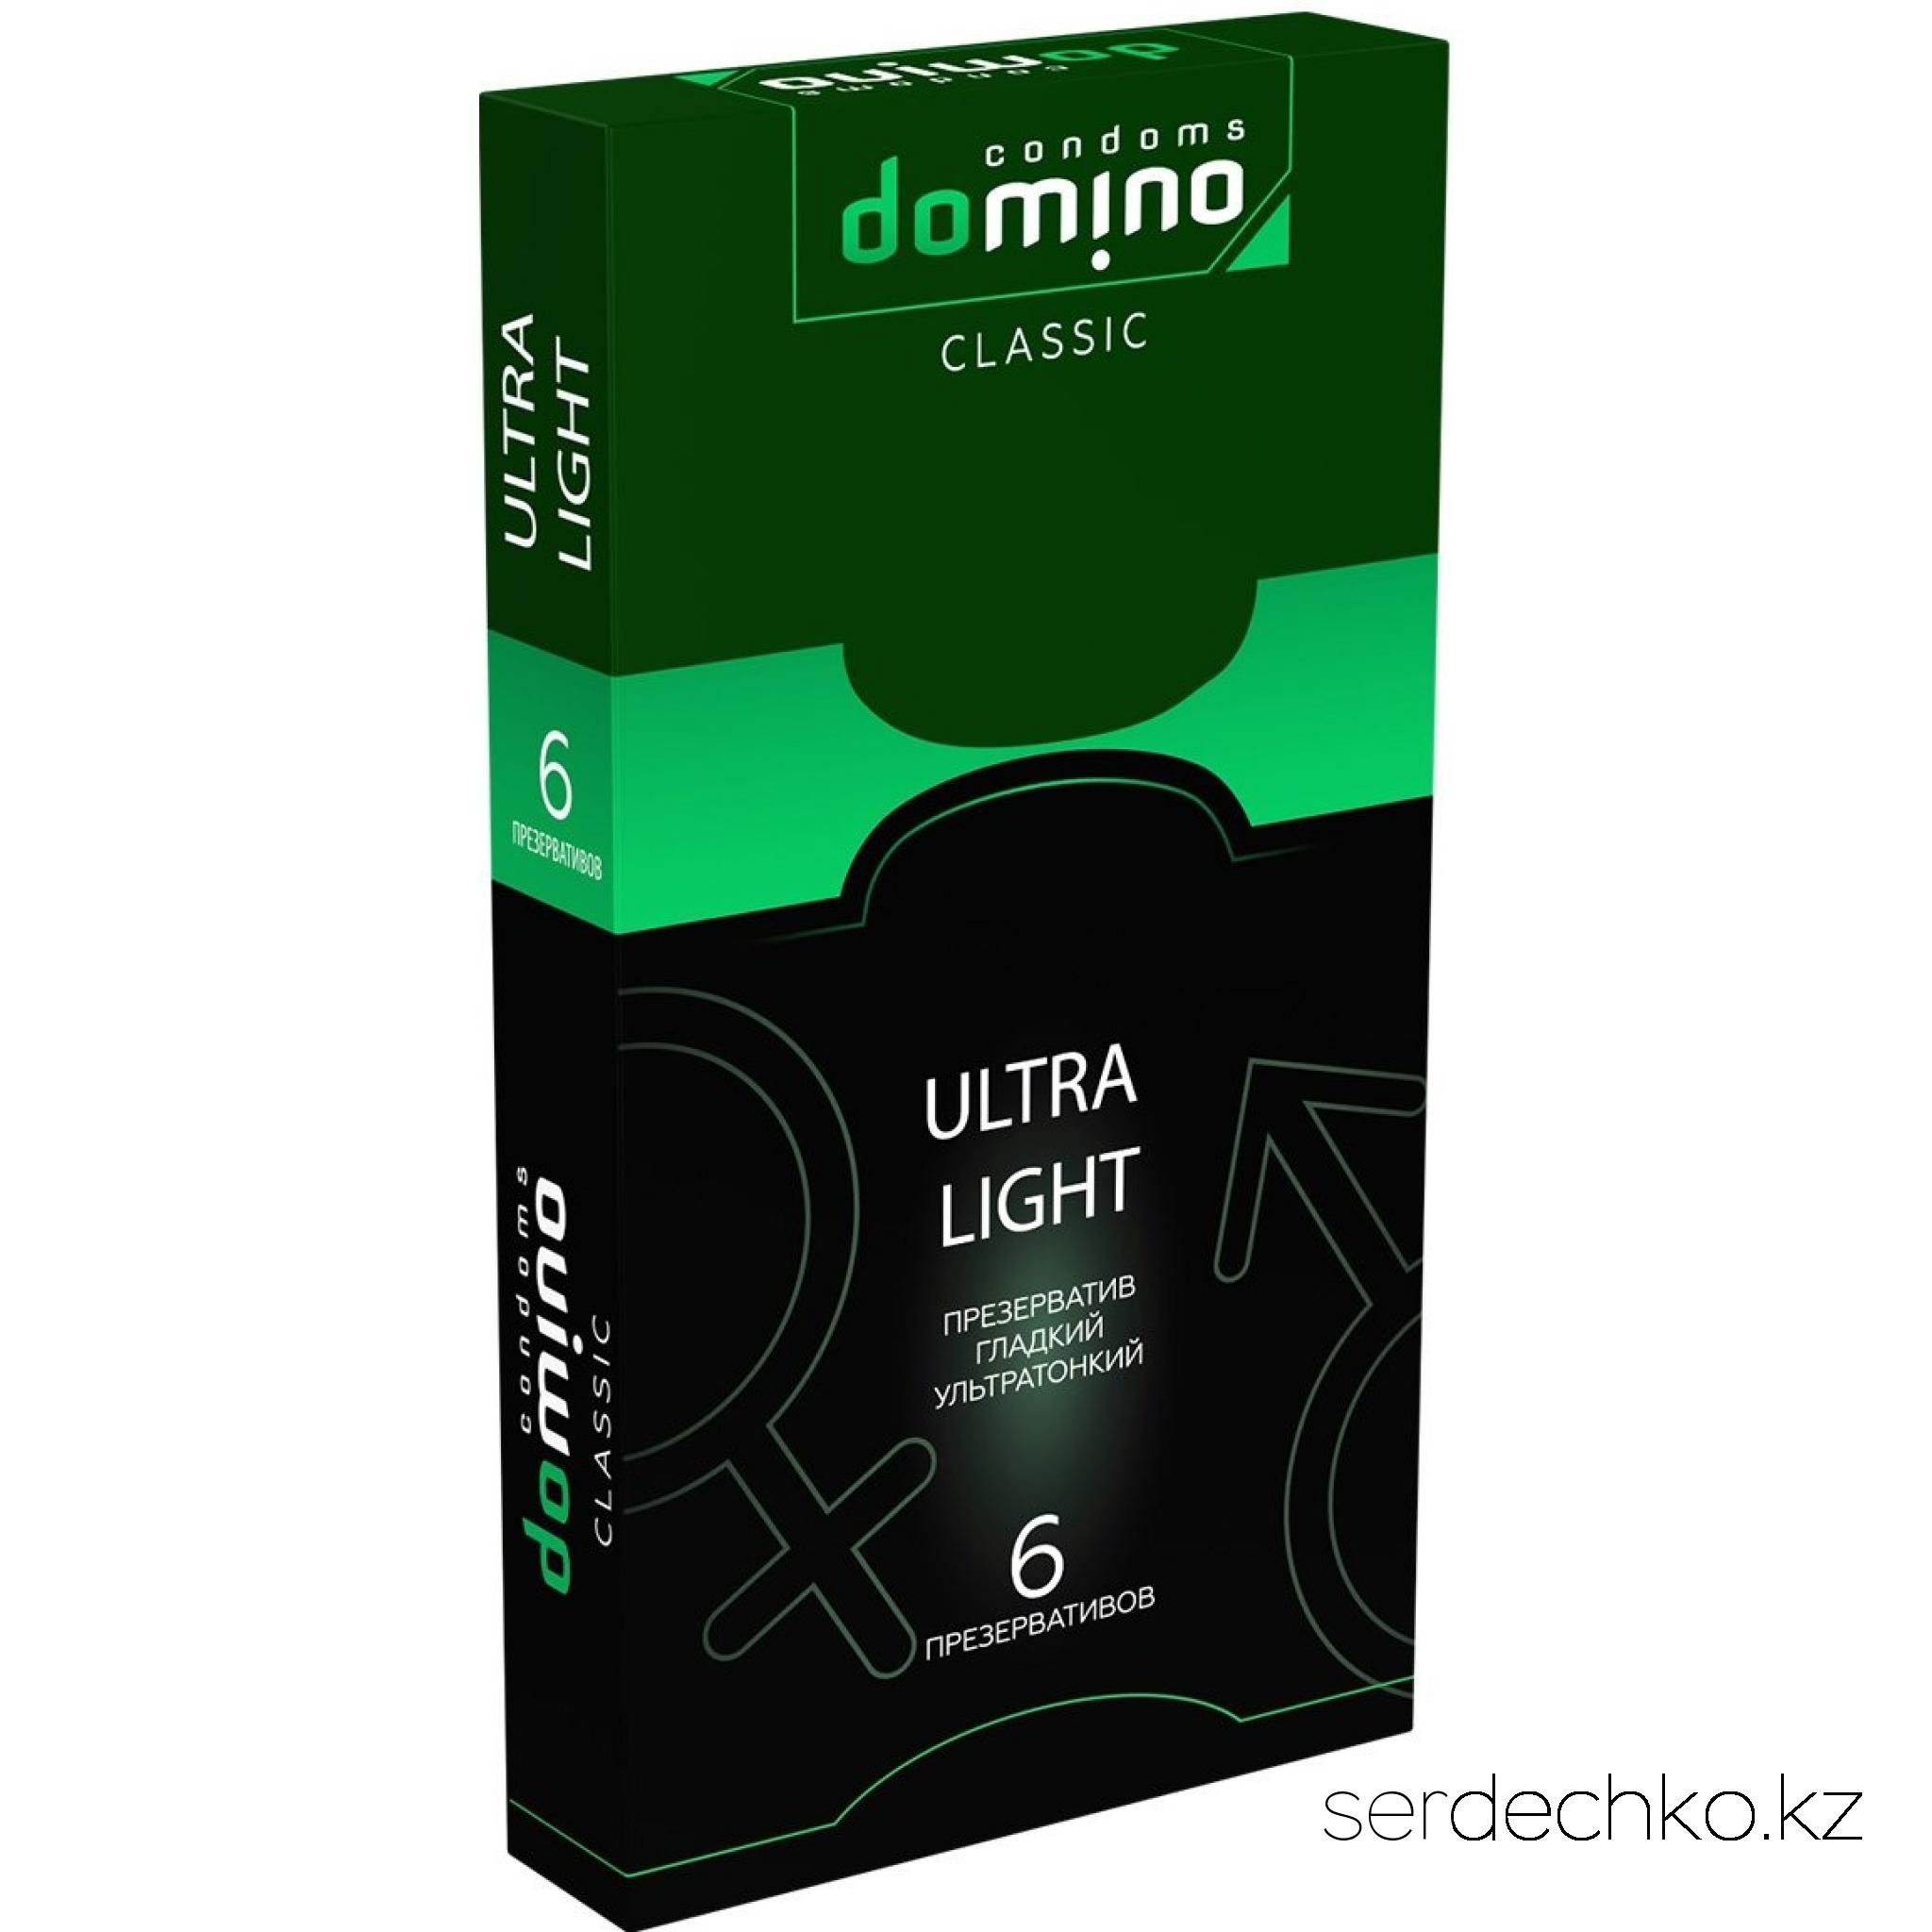 ПРЕЗЕРВАТИВЫ DOMINO CLASSIC ULTRA LIGHT 6 штук, 
	Гладкие презервативы из высококачественного латекса, для тех кому нужна максимальная чувствительность! В каждой фирменной упаковке содержится 6 супертонких презервативов в смазке.
	Длина, мм    +/-180
	Толщина стенок, мм.    0,06
	Ширина, мм    +/-52
